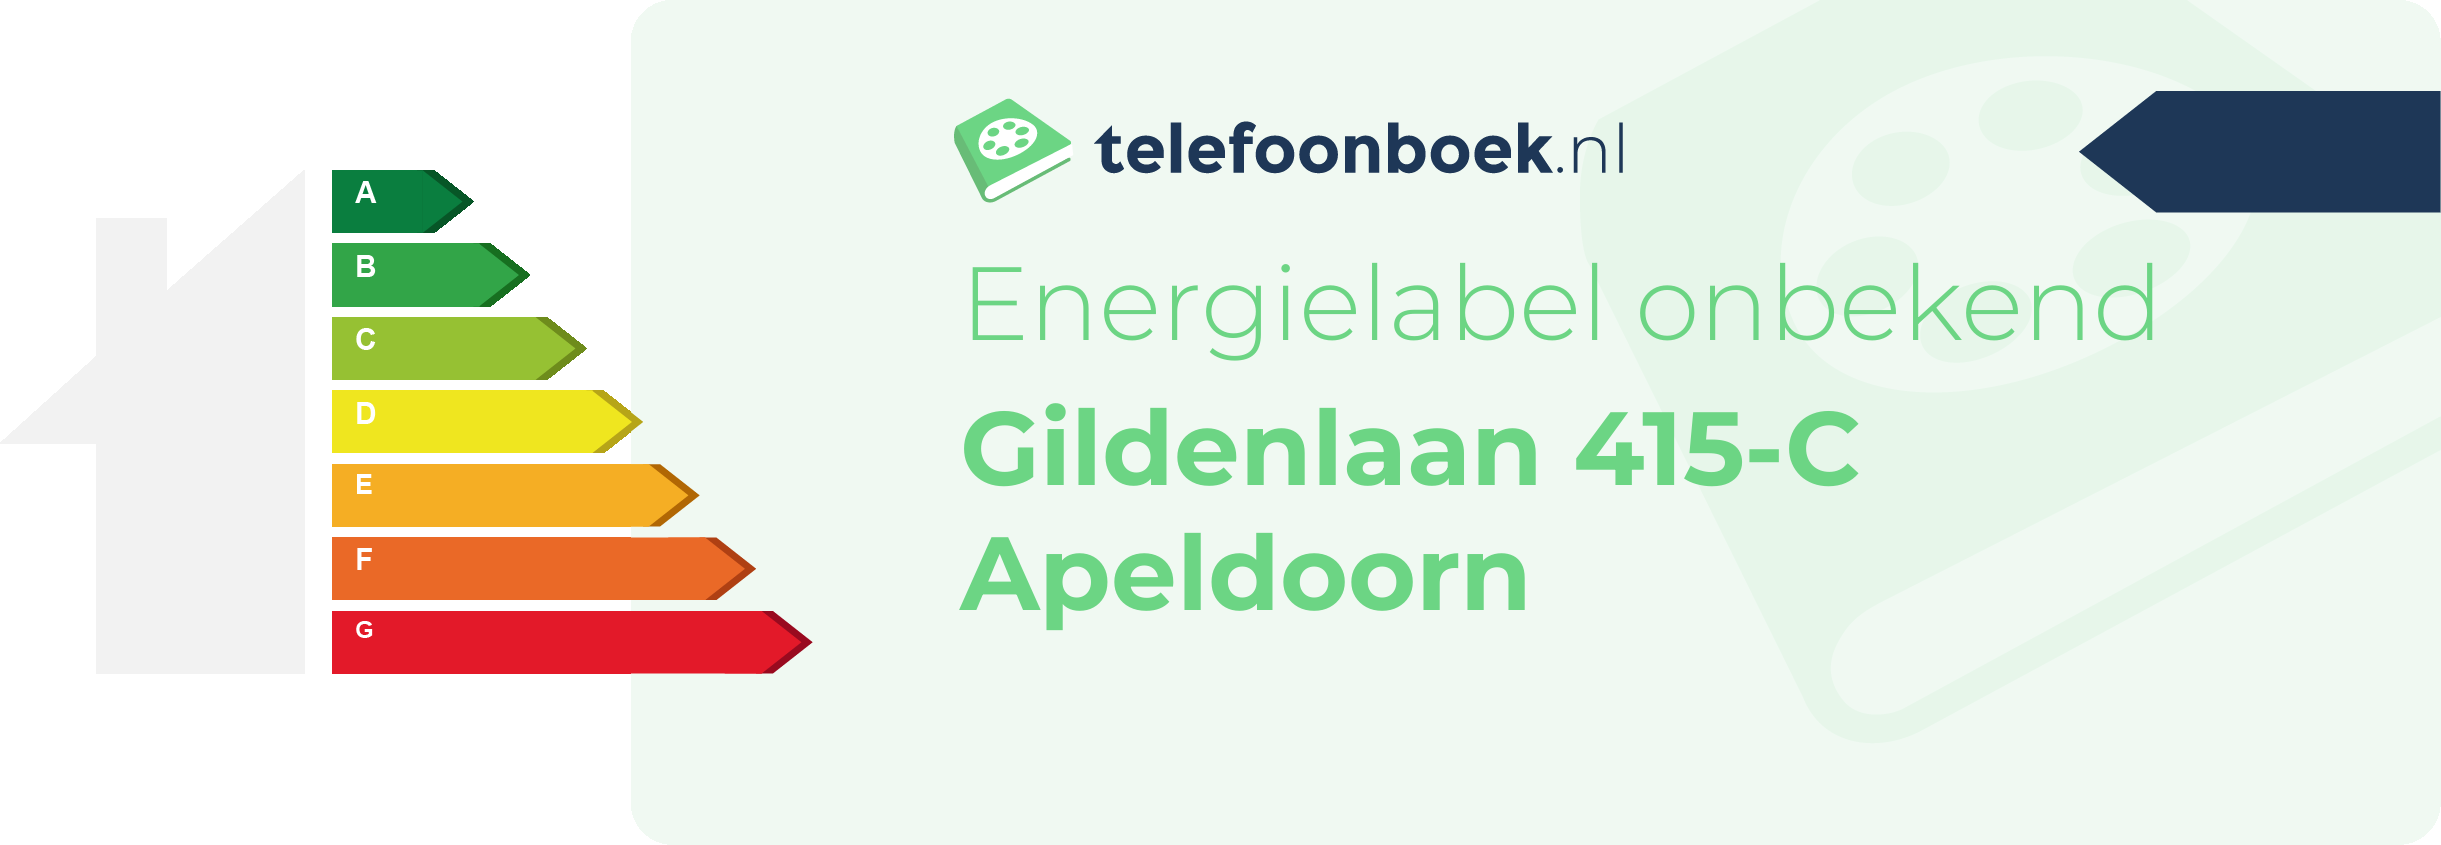 Energielabel Gildenlaan 415-C Apeldoorn